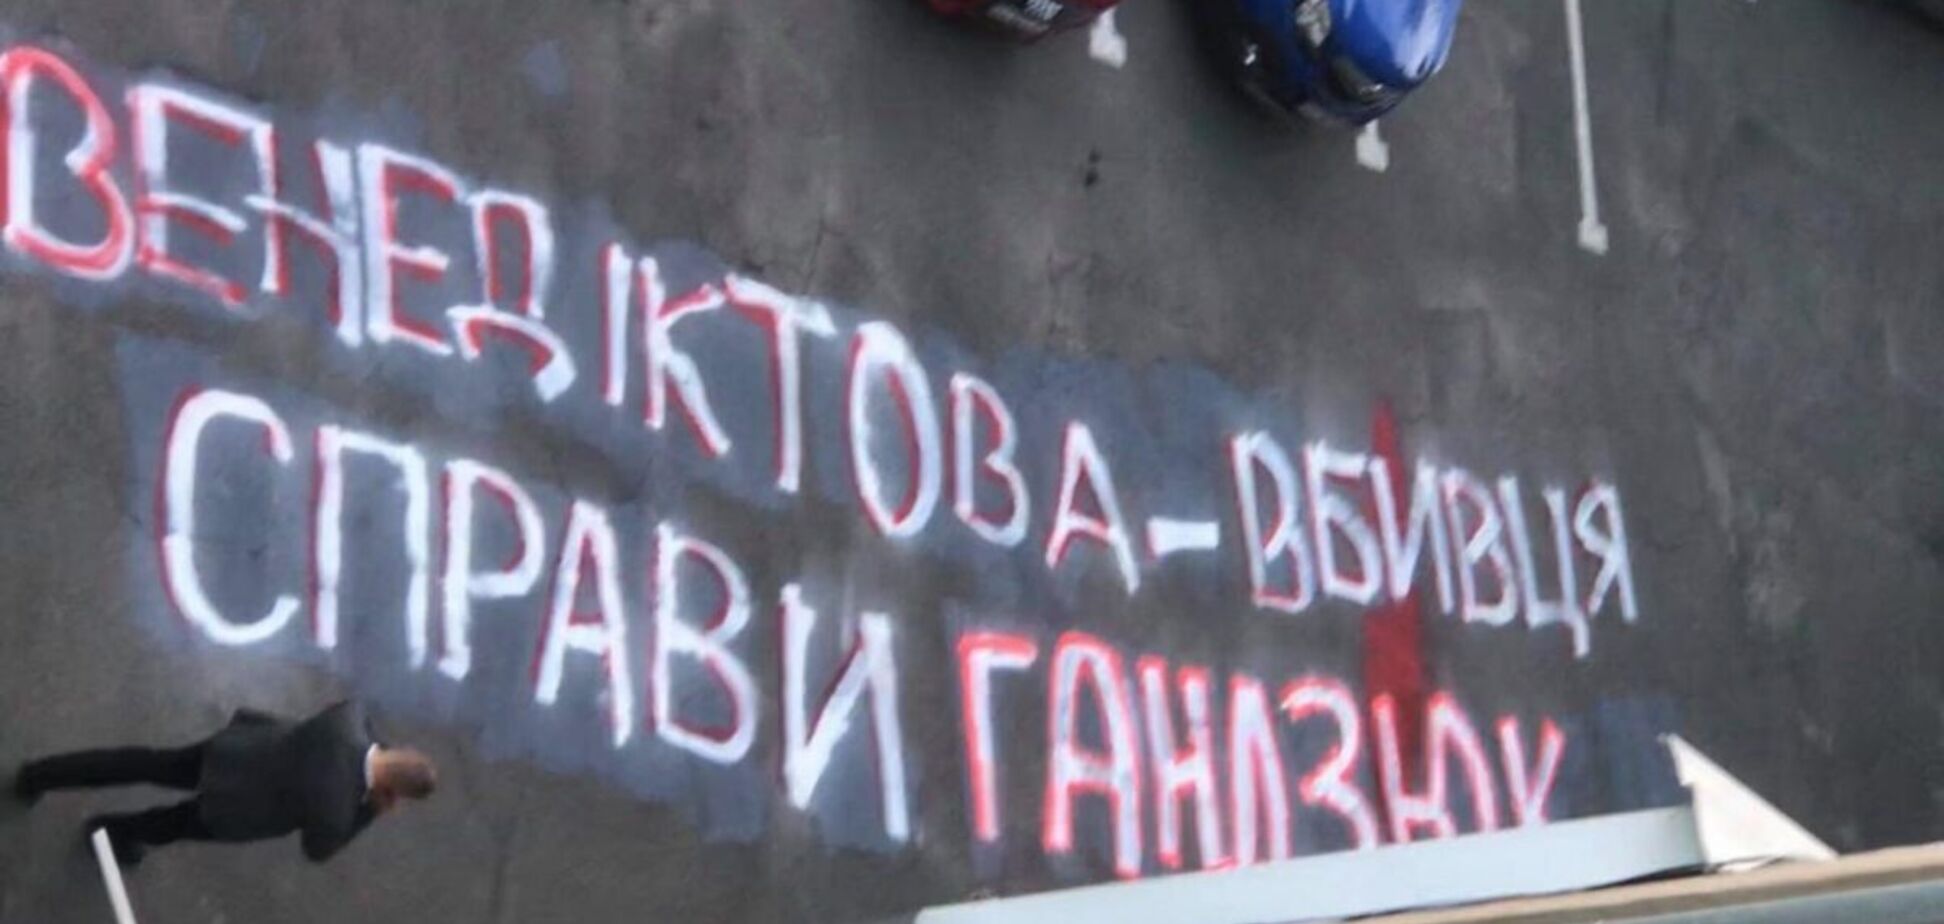 Активісти влаштували чергову акцію біля будинку Венедиктової. Фото та відео